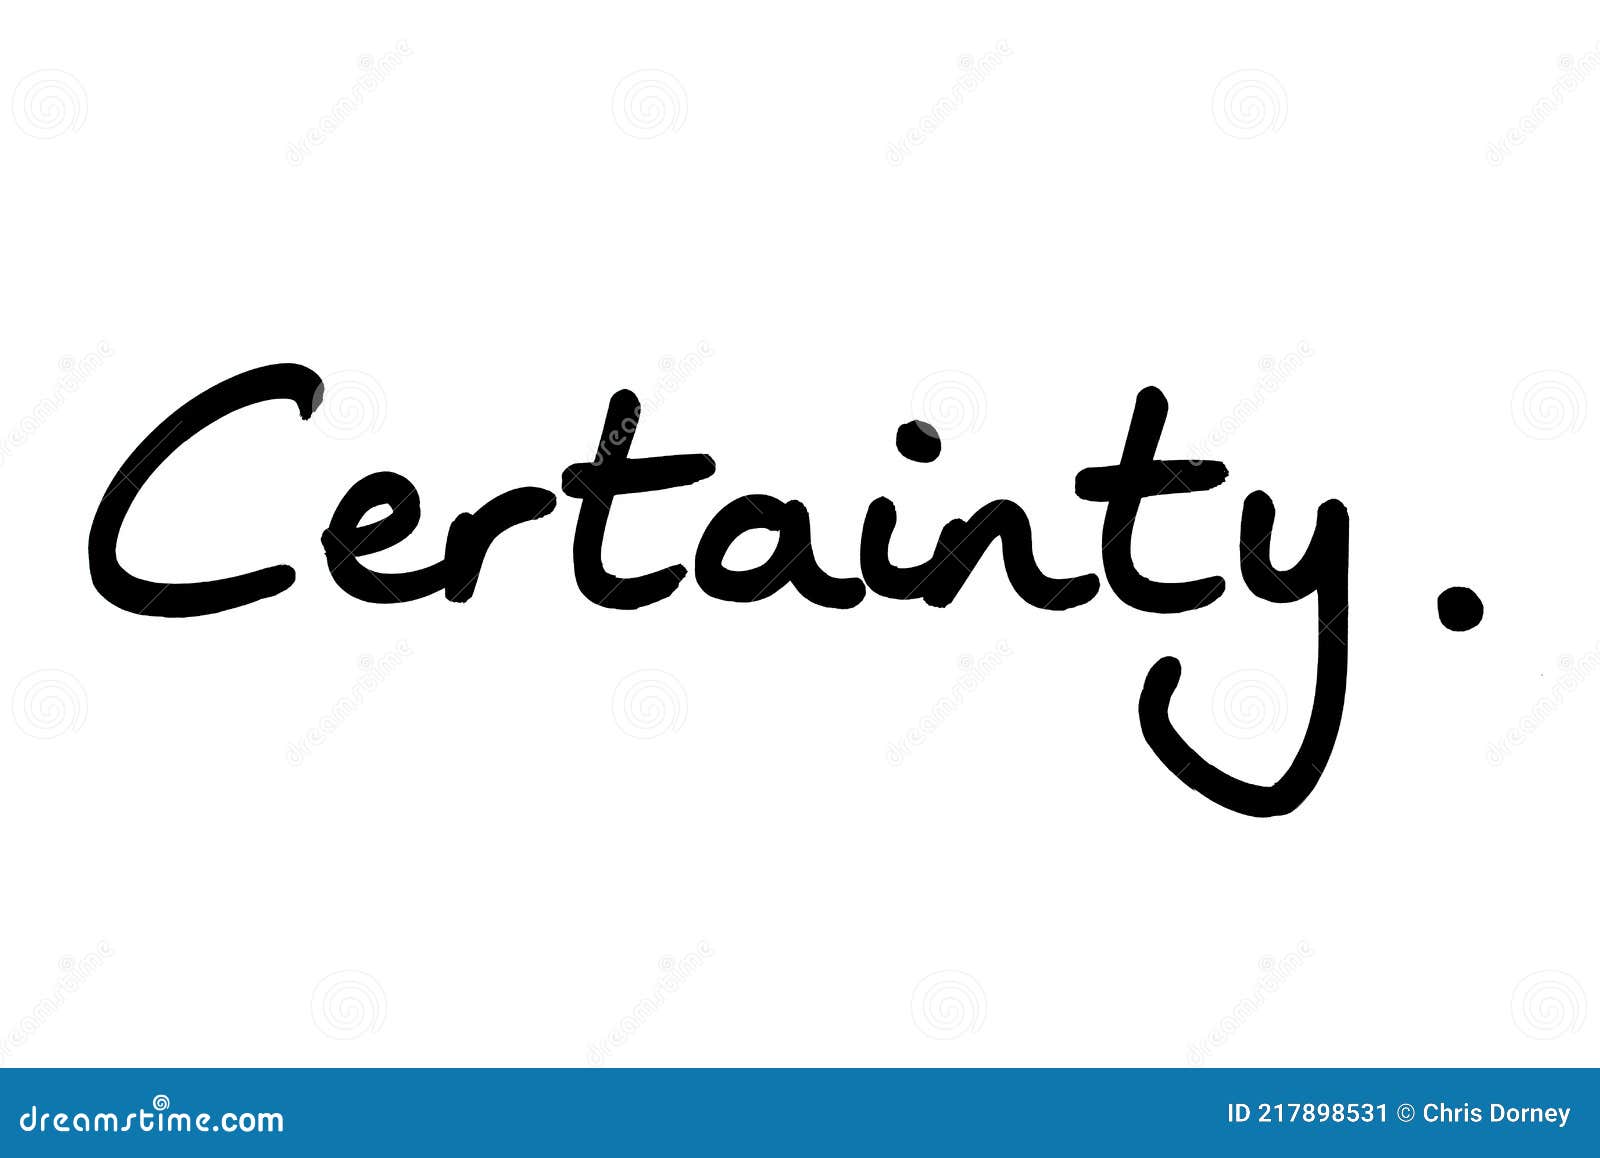 certainty